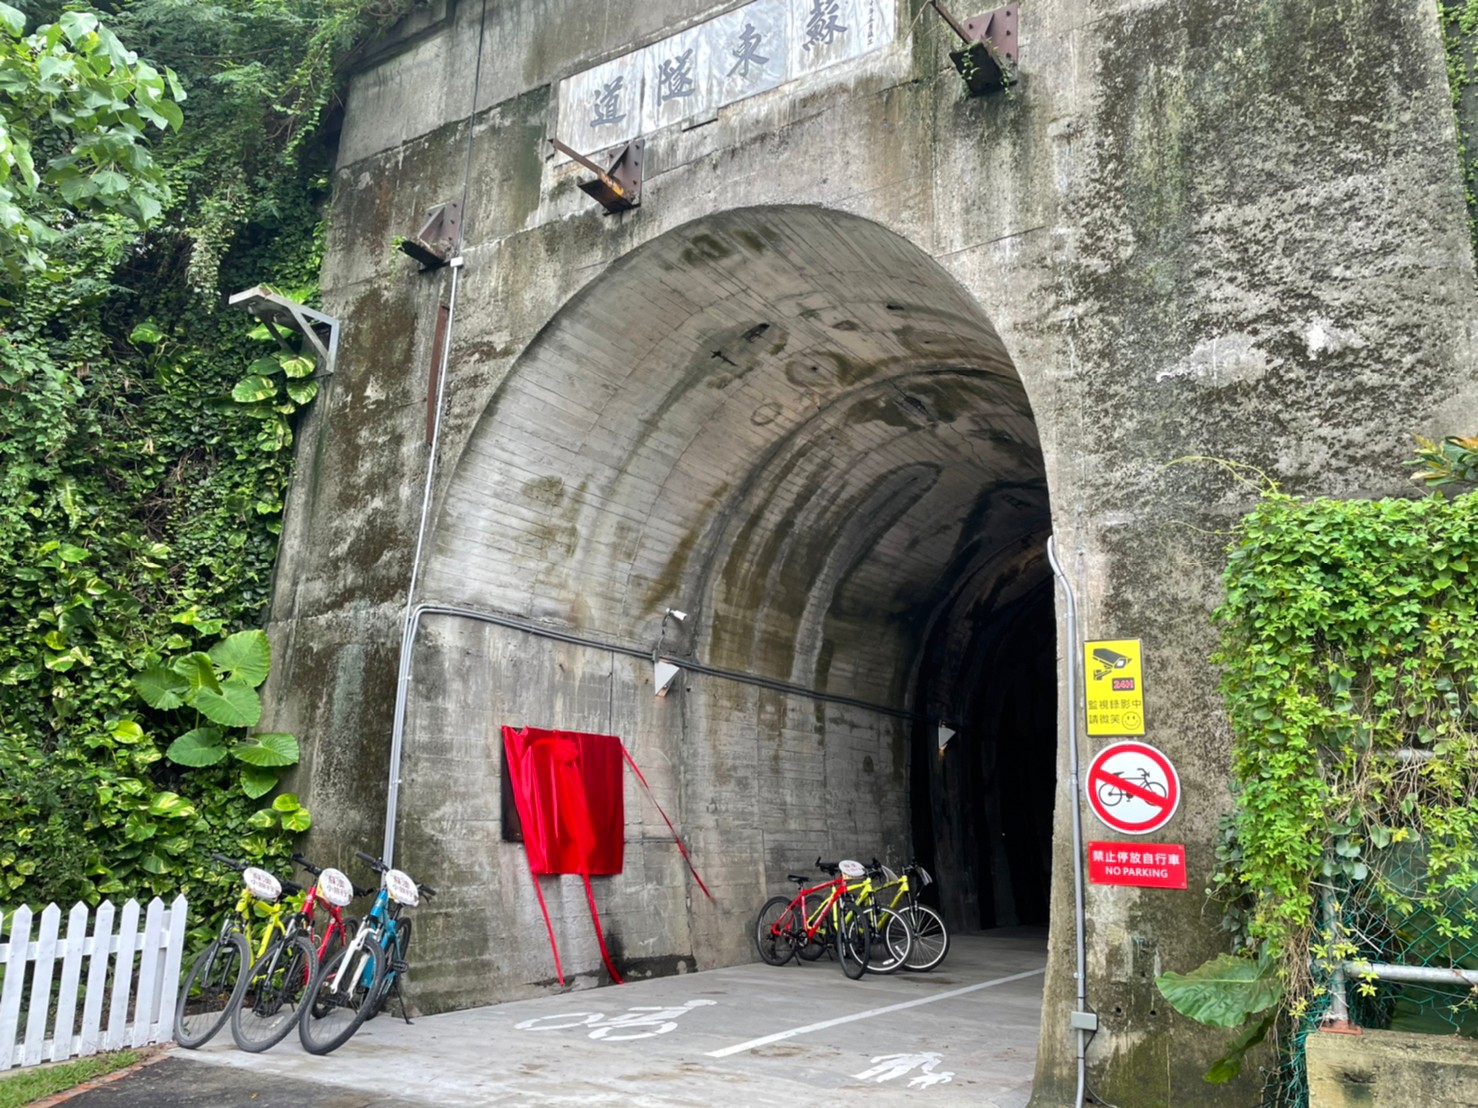 蘇東隧道自行車停駐廣場揭幕儀式